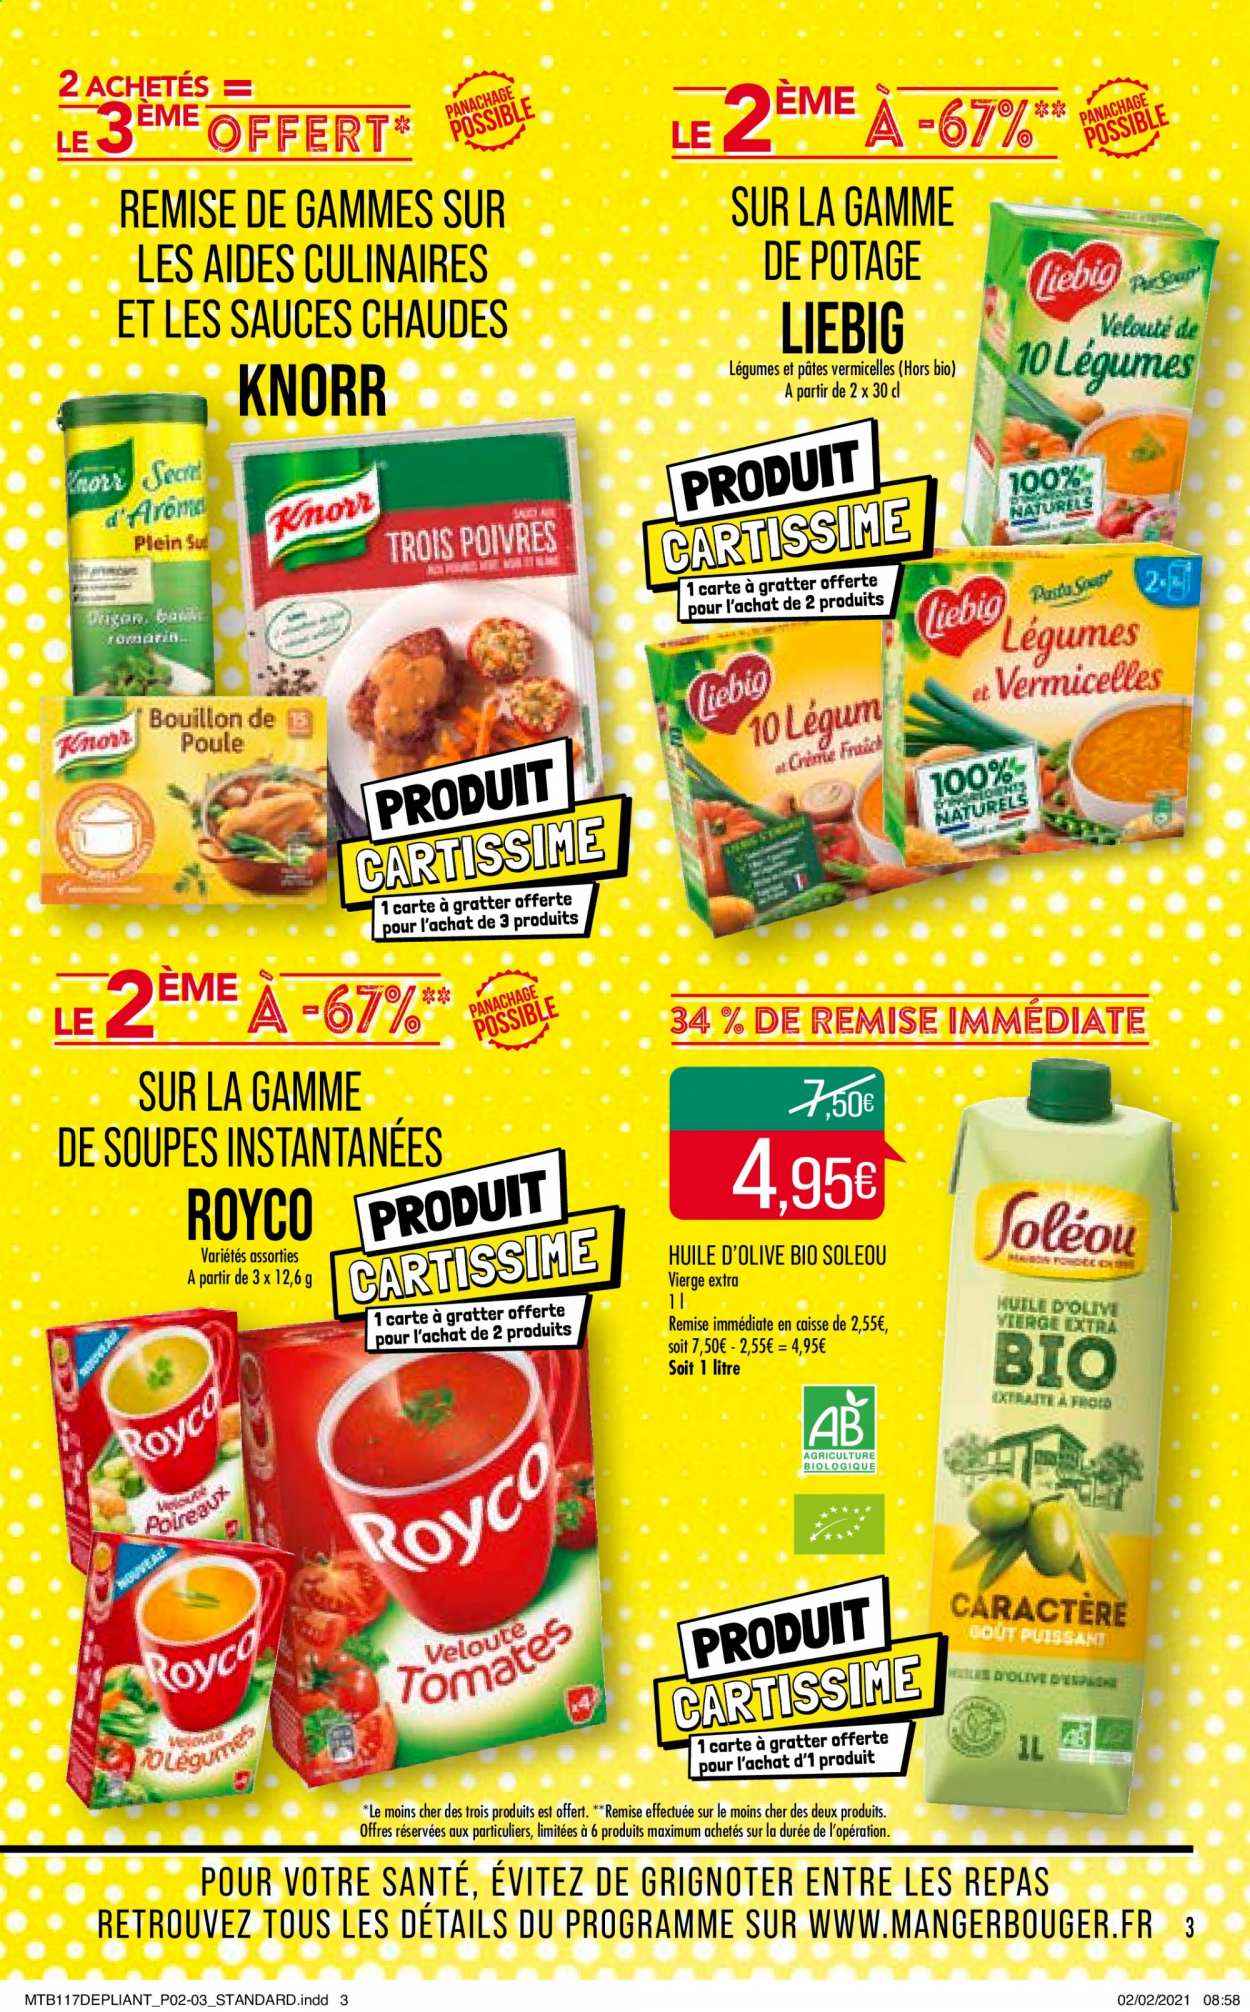 thumbnail - Catalogue Supermarché Match - 23/02/2021 - 07/03/2021 - Produits soldés - Knorr, vermicelles, huile, huile d'olive. Page 3.